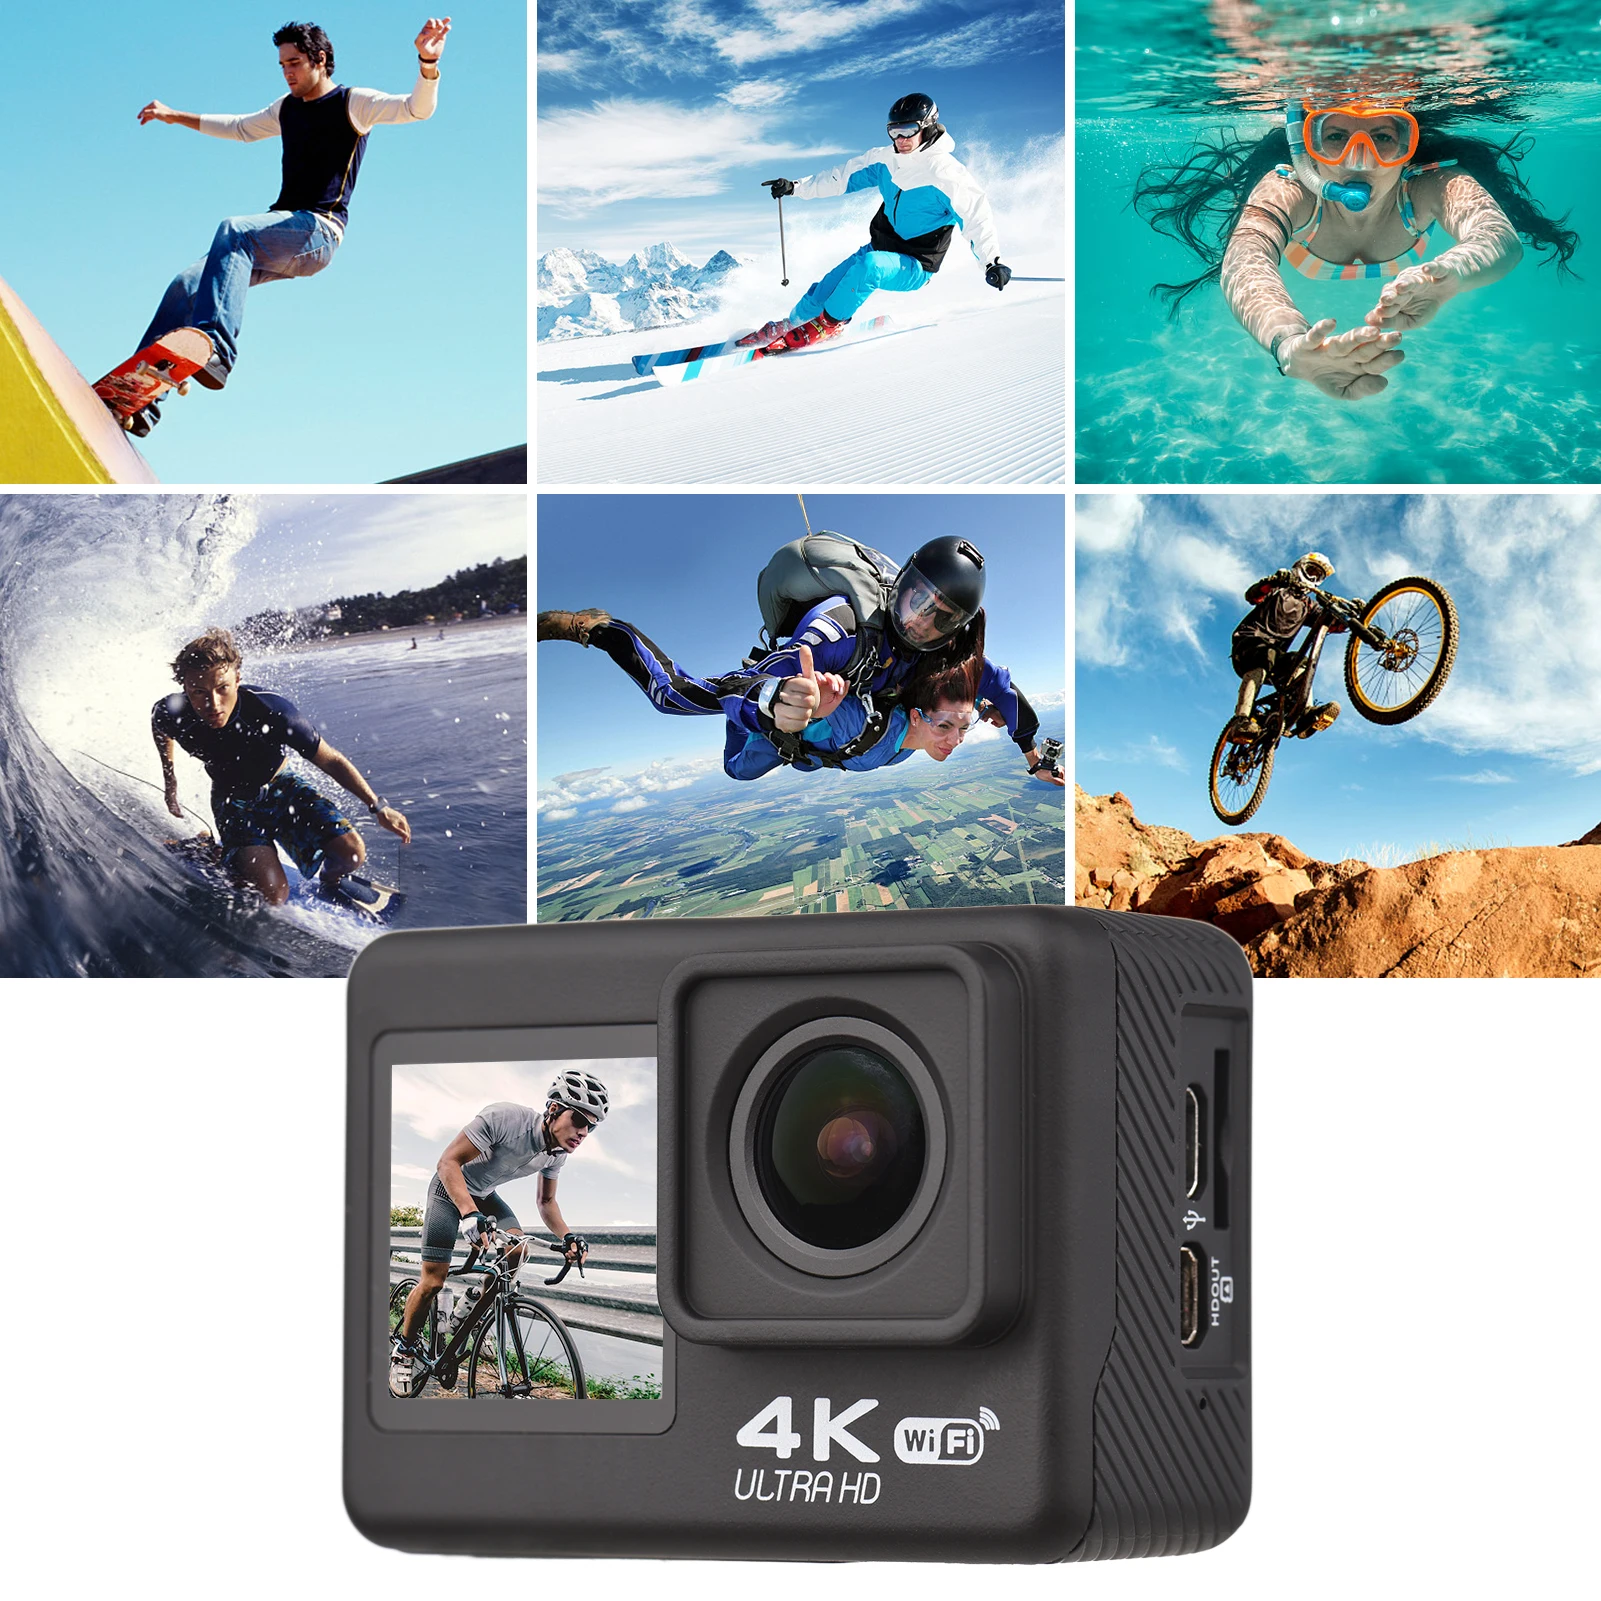 Kameras 4K60FPS WiFi Actionkamera Dual Screen 170 ° Weitwinkel 30m wasserdichte Sportkamera mit Fernbedienungs -Montage -Zubehör Kit Kit